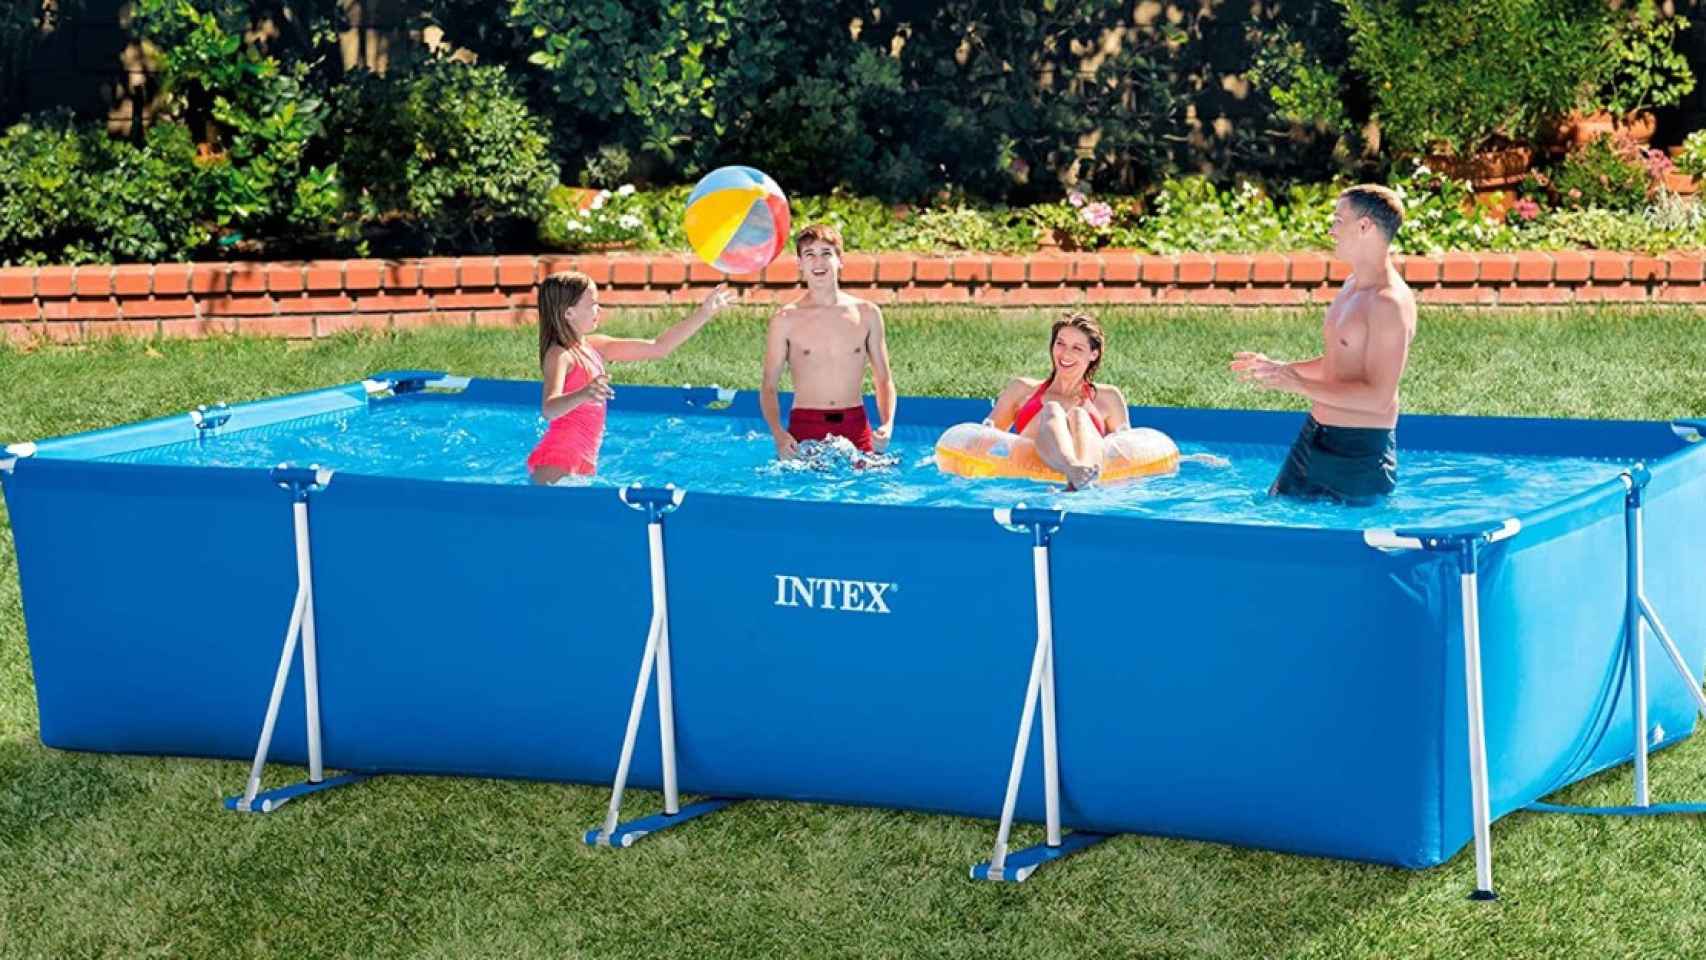 La piscina desmontable Intex que puede ser tuya por mucho menos